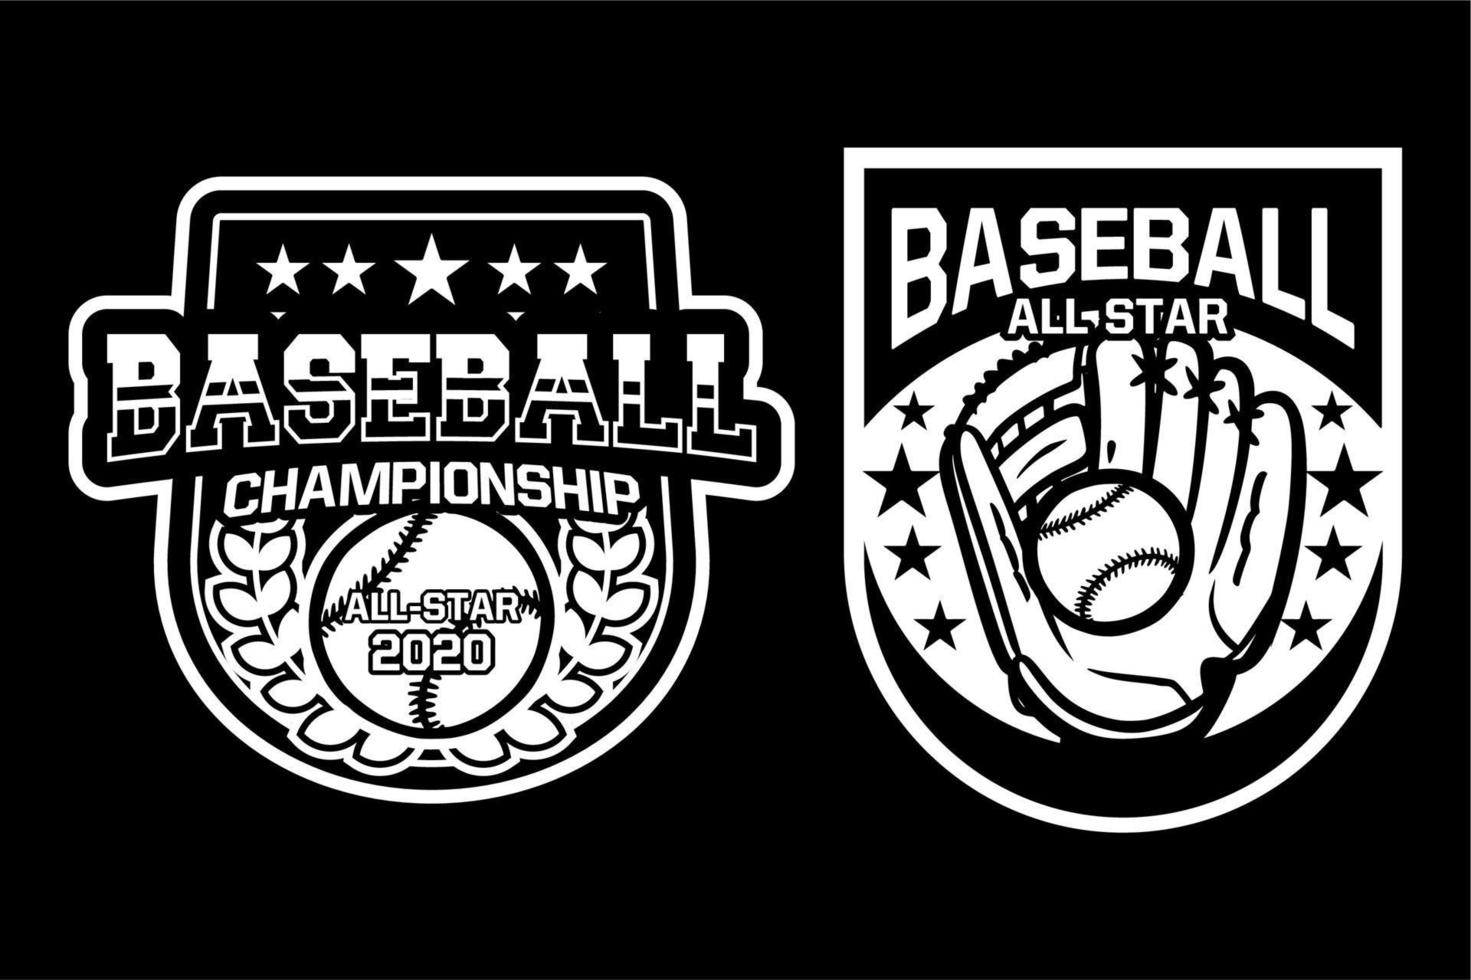 campeonato de beisebol todo estrela emblema logotipo emblema coleção preto e branco vetor